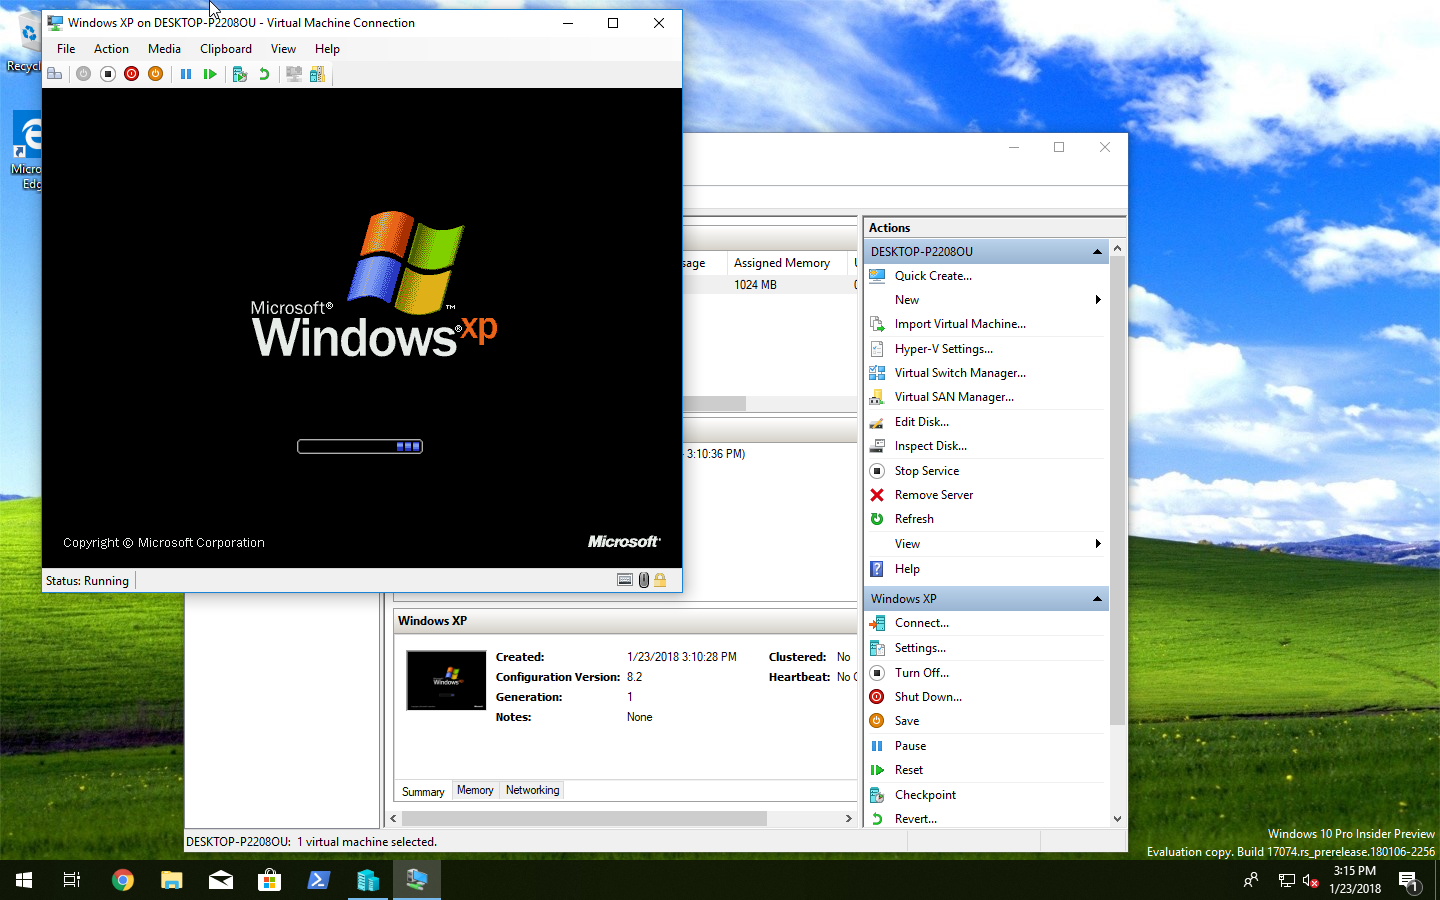 xp mode on windows 10